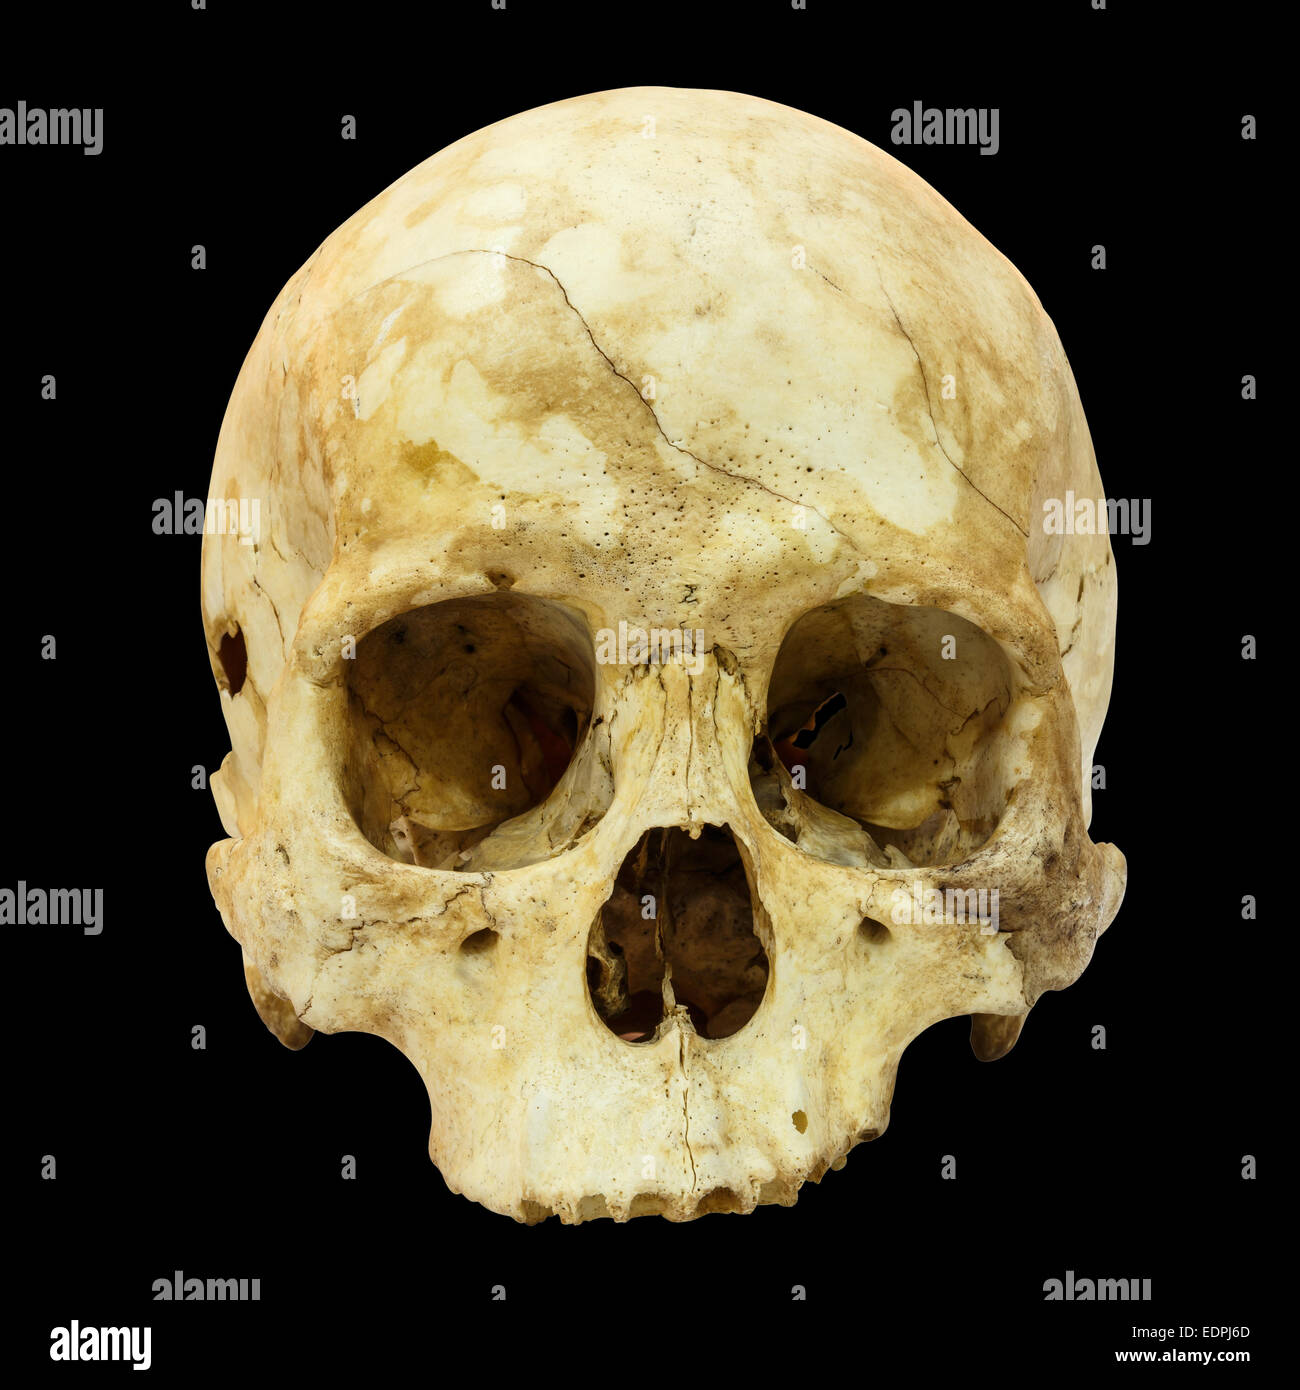 Fracture du crâne humain (Mongoloïdes,Asiatique) sur fond isolé Banque D'Images